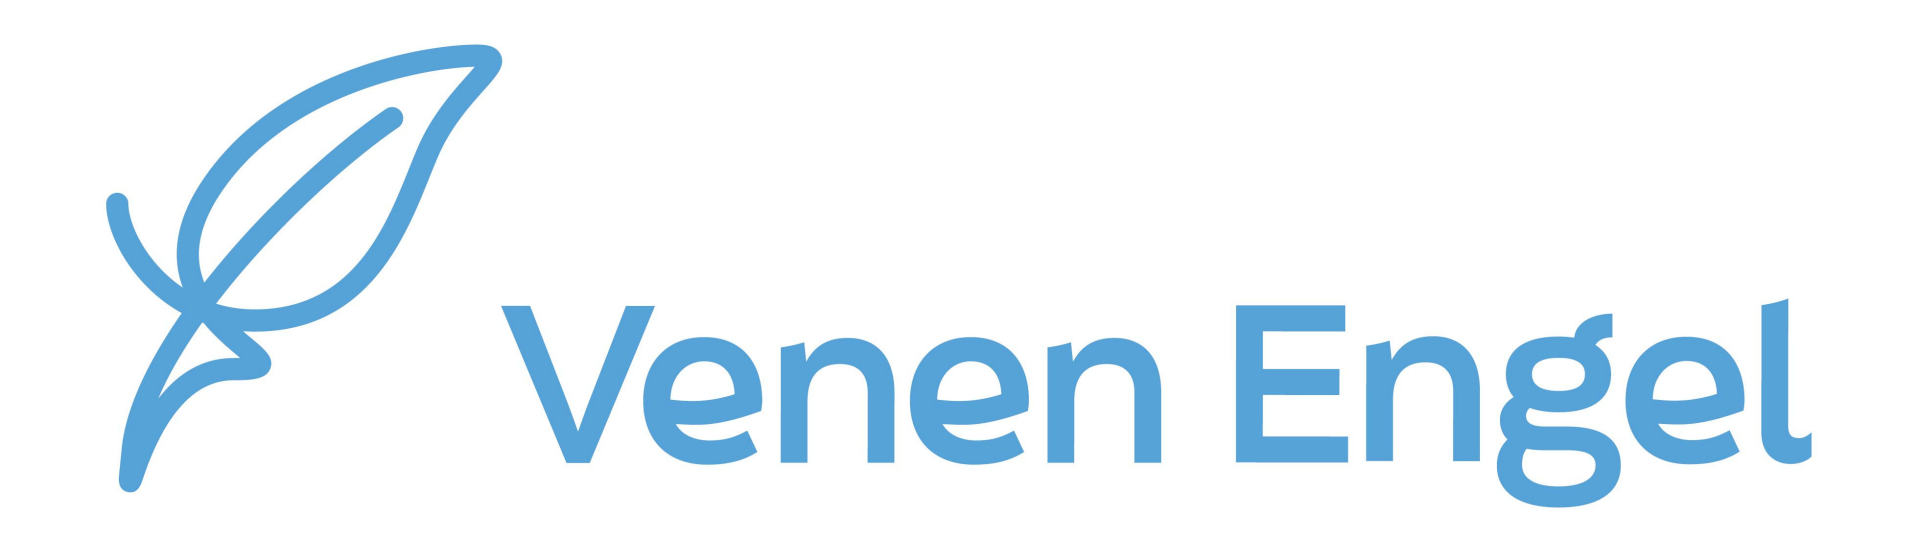 Venen Engel - Wellcosan GmbH